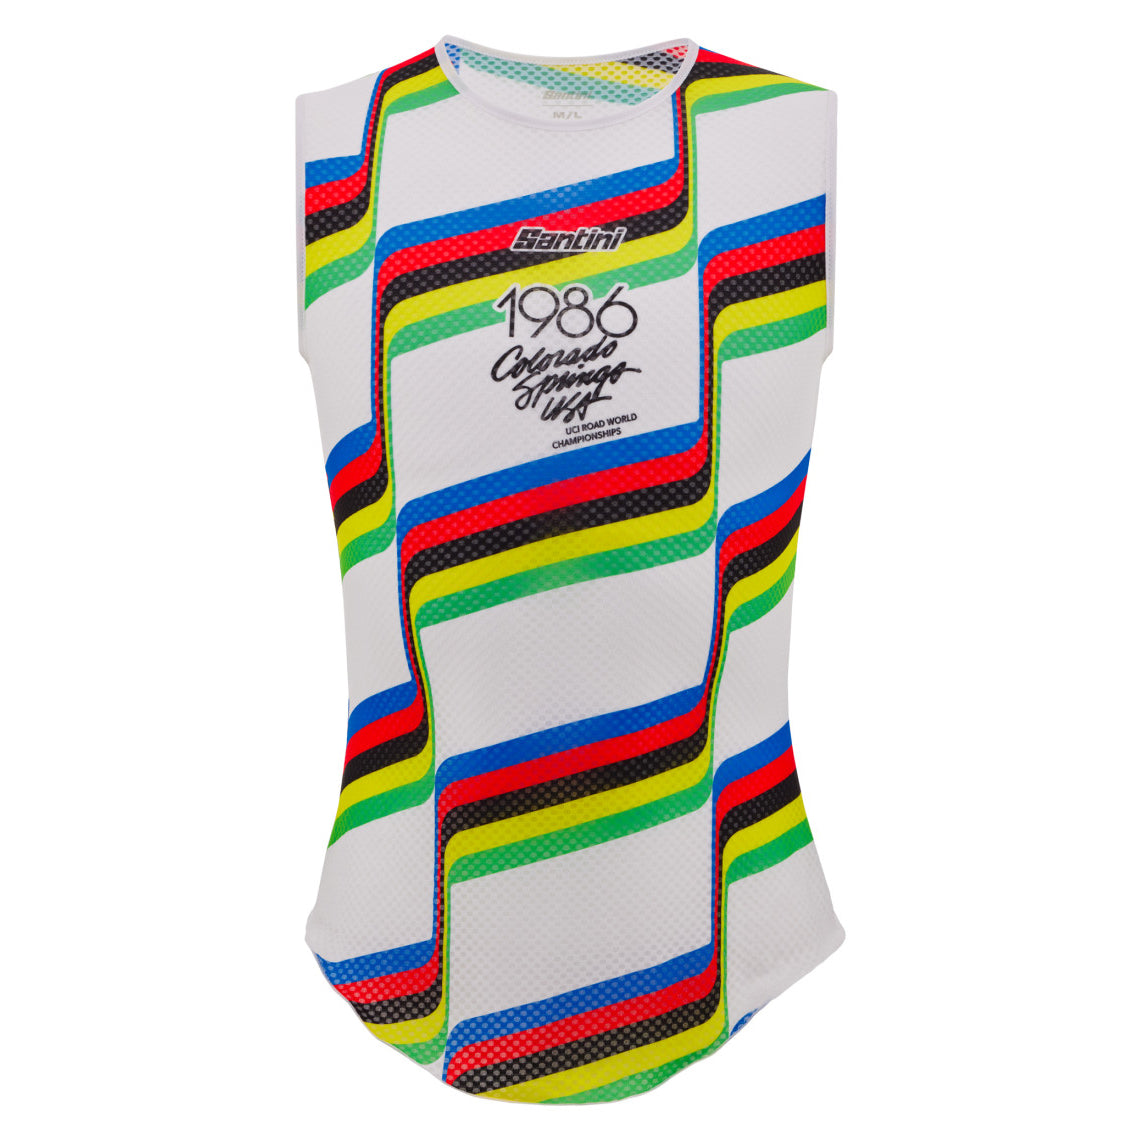 Santini UCI Colorado Springs 1968 - Baselayer - Cyclop.in